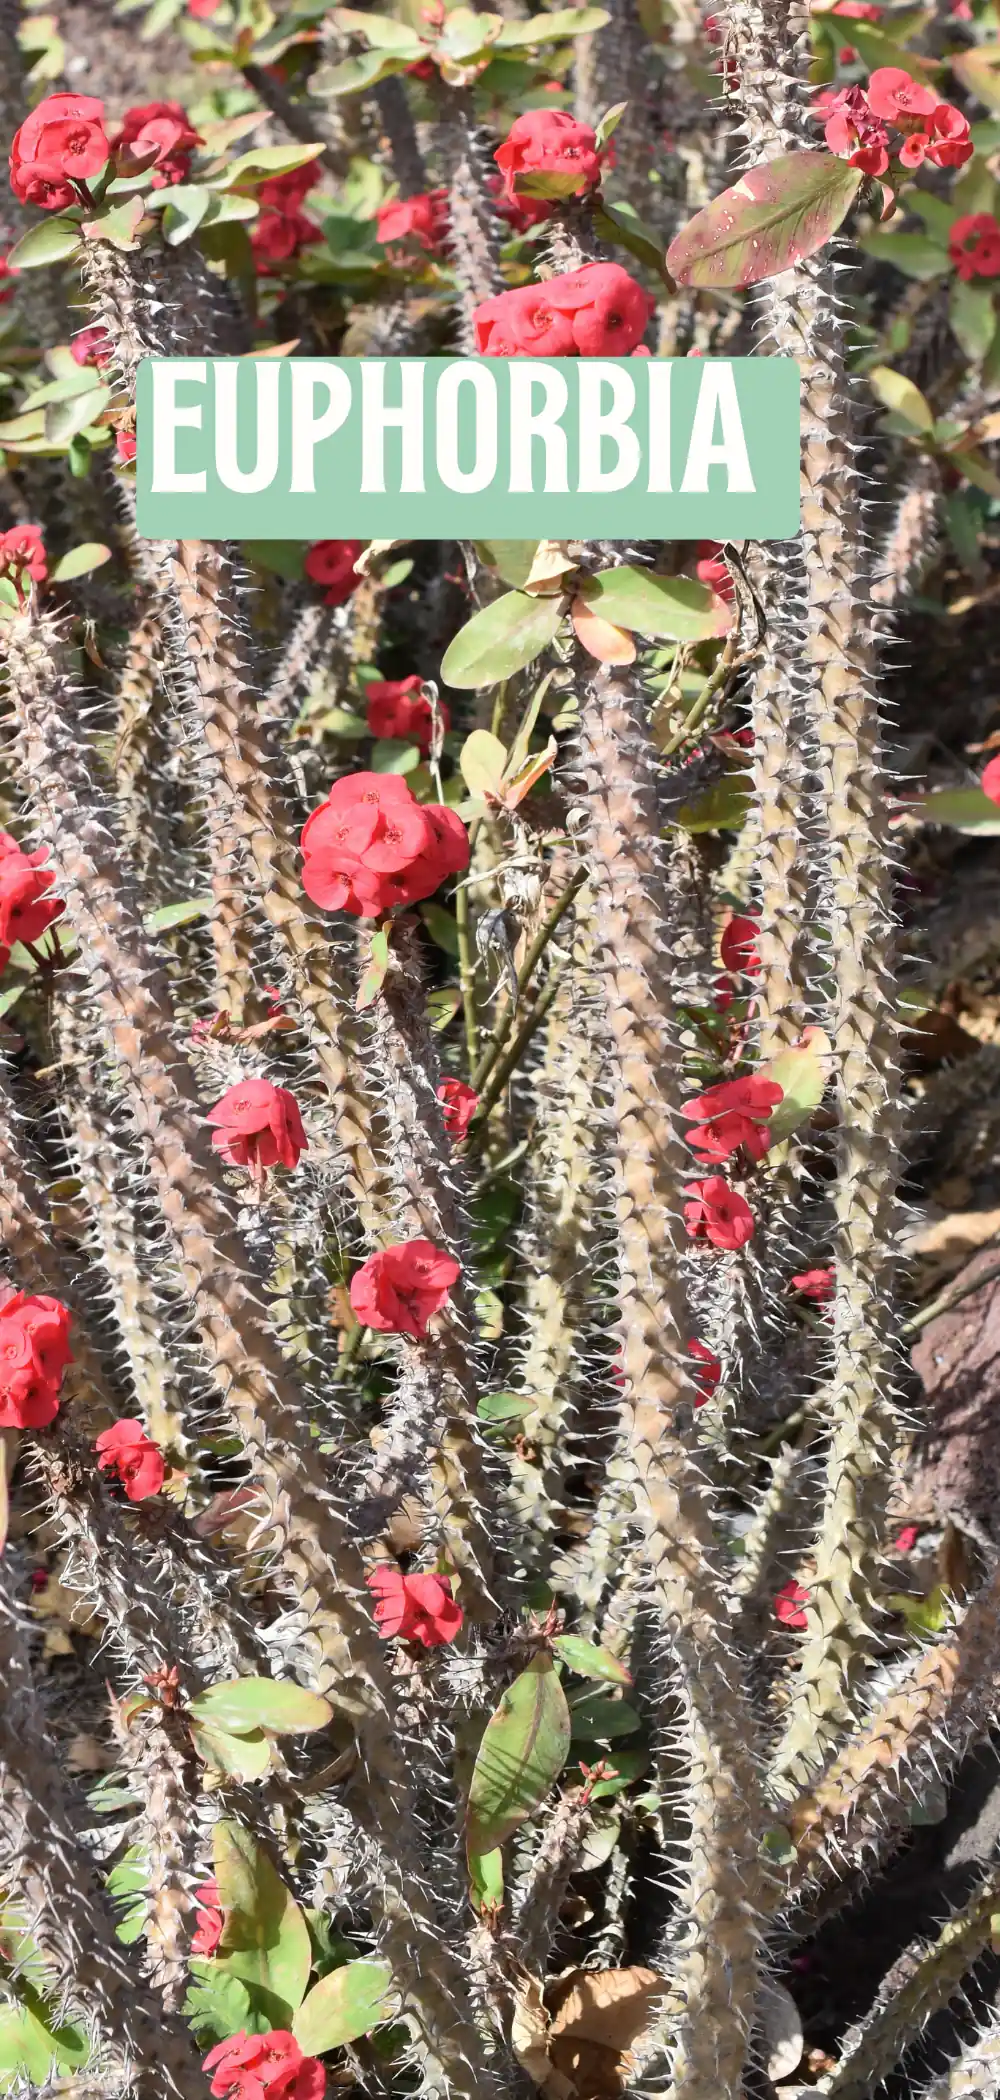 Image of Euphorbia Plant